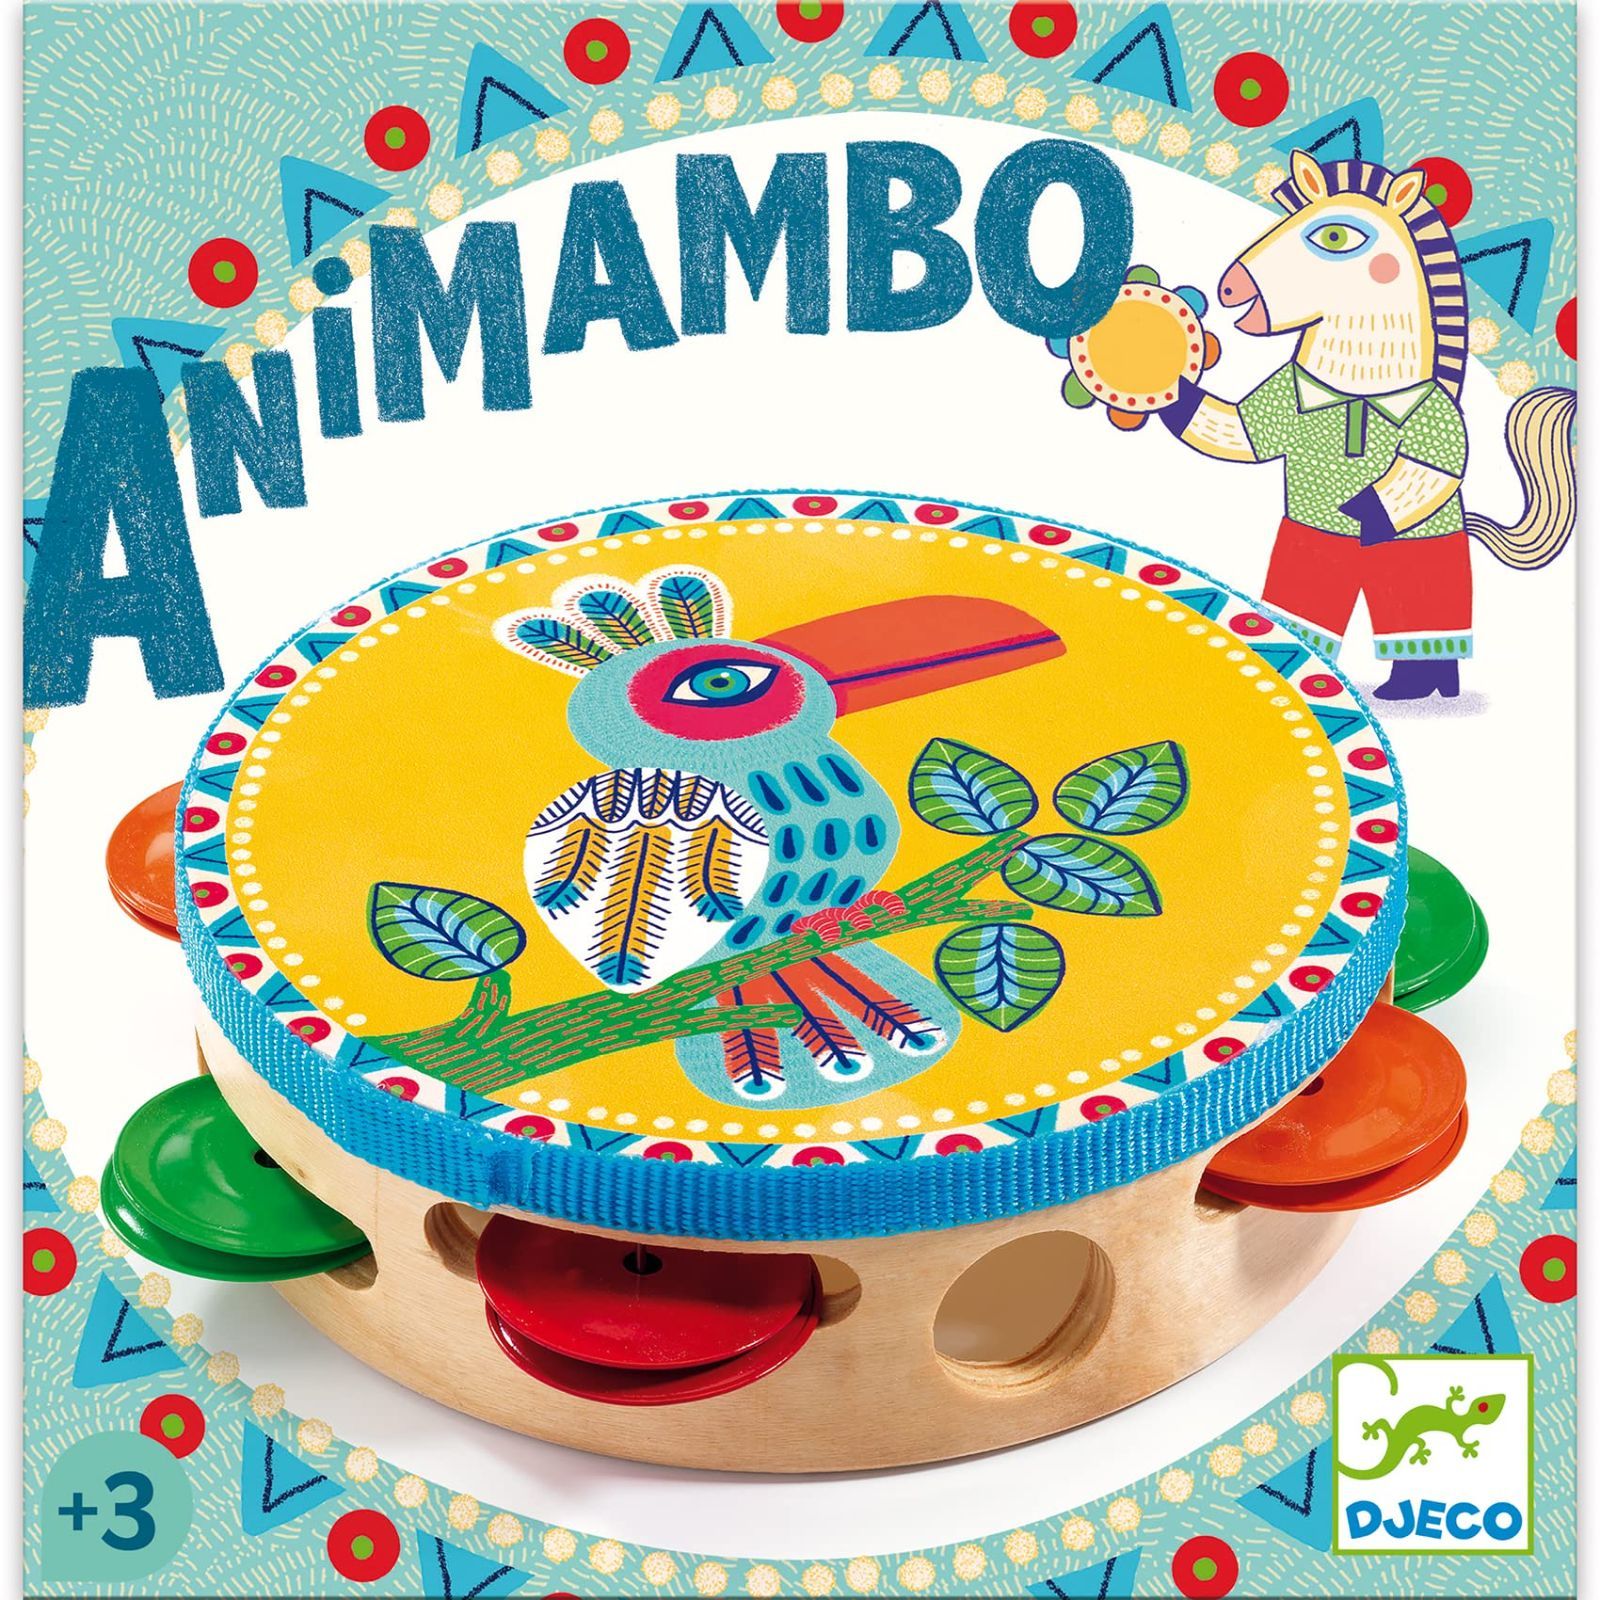 DJECO ジェコ アニマンボシリーズ タンバリン おもちゃ 楽器 木のおもちゃ 打楽器 たいこ 幼児 赤ちゃん プレゼント (DJ06005)